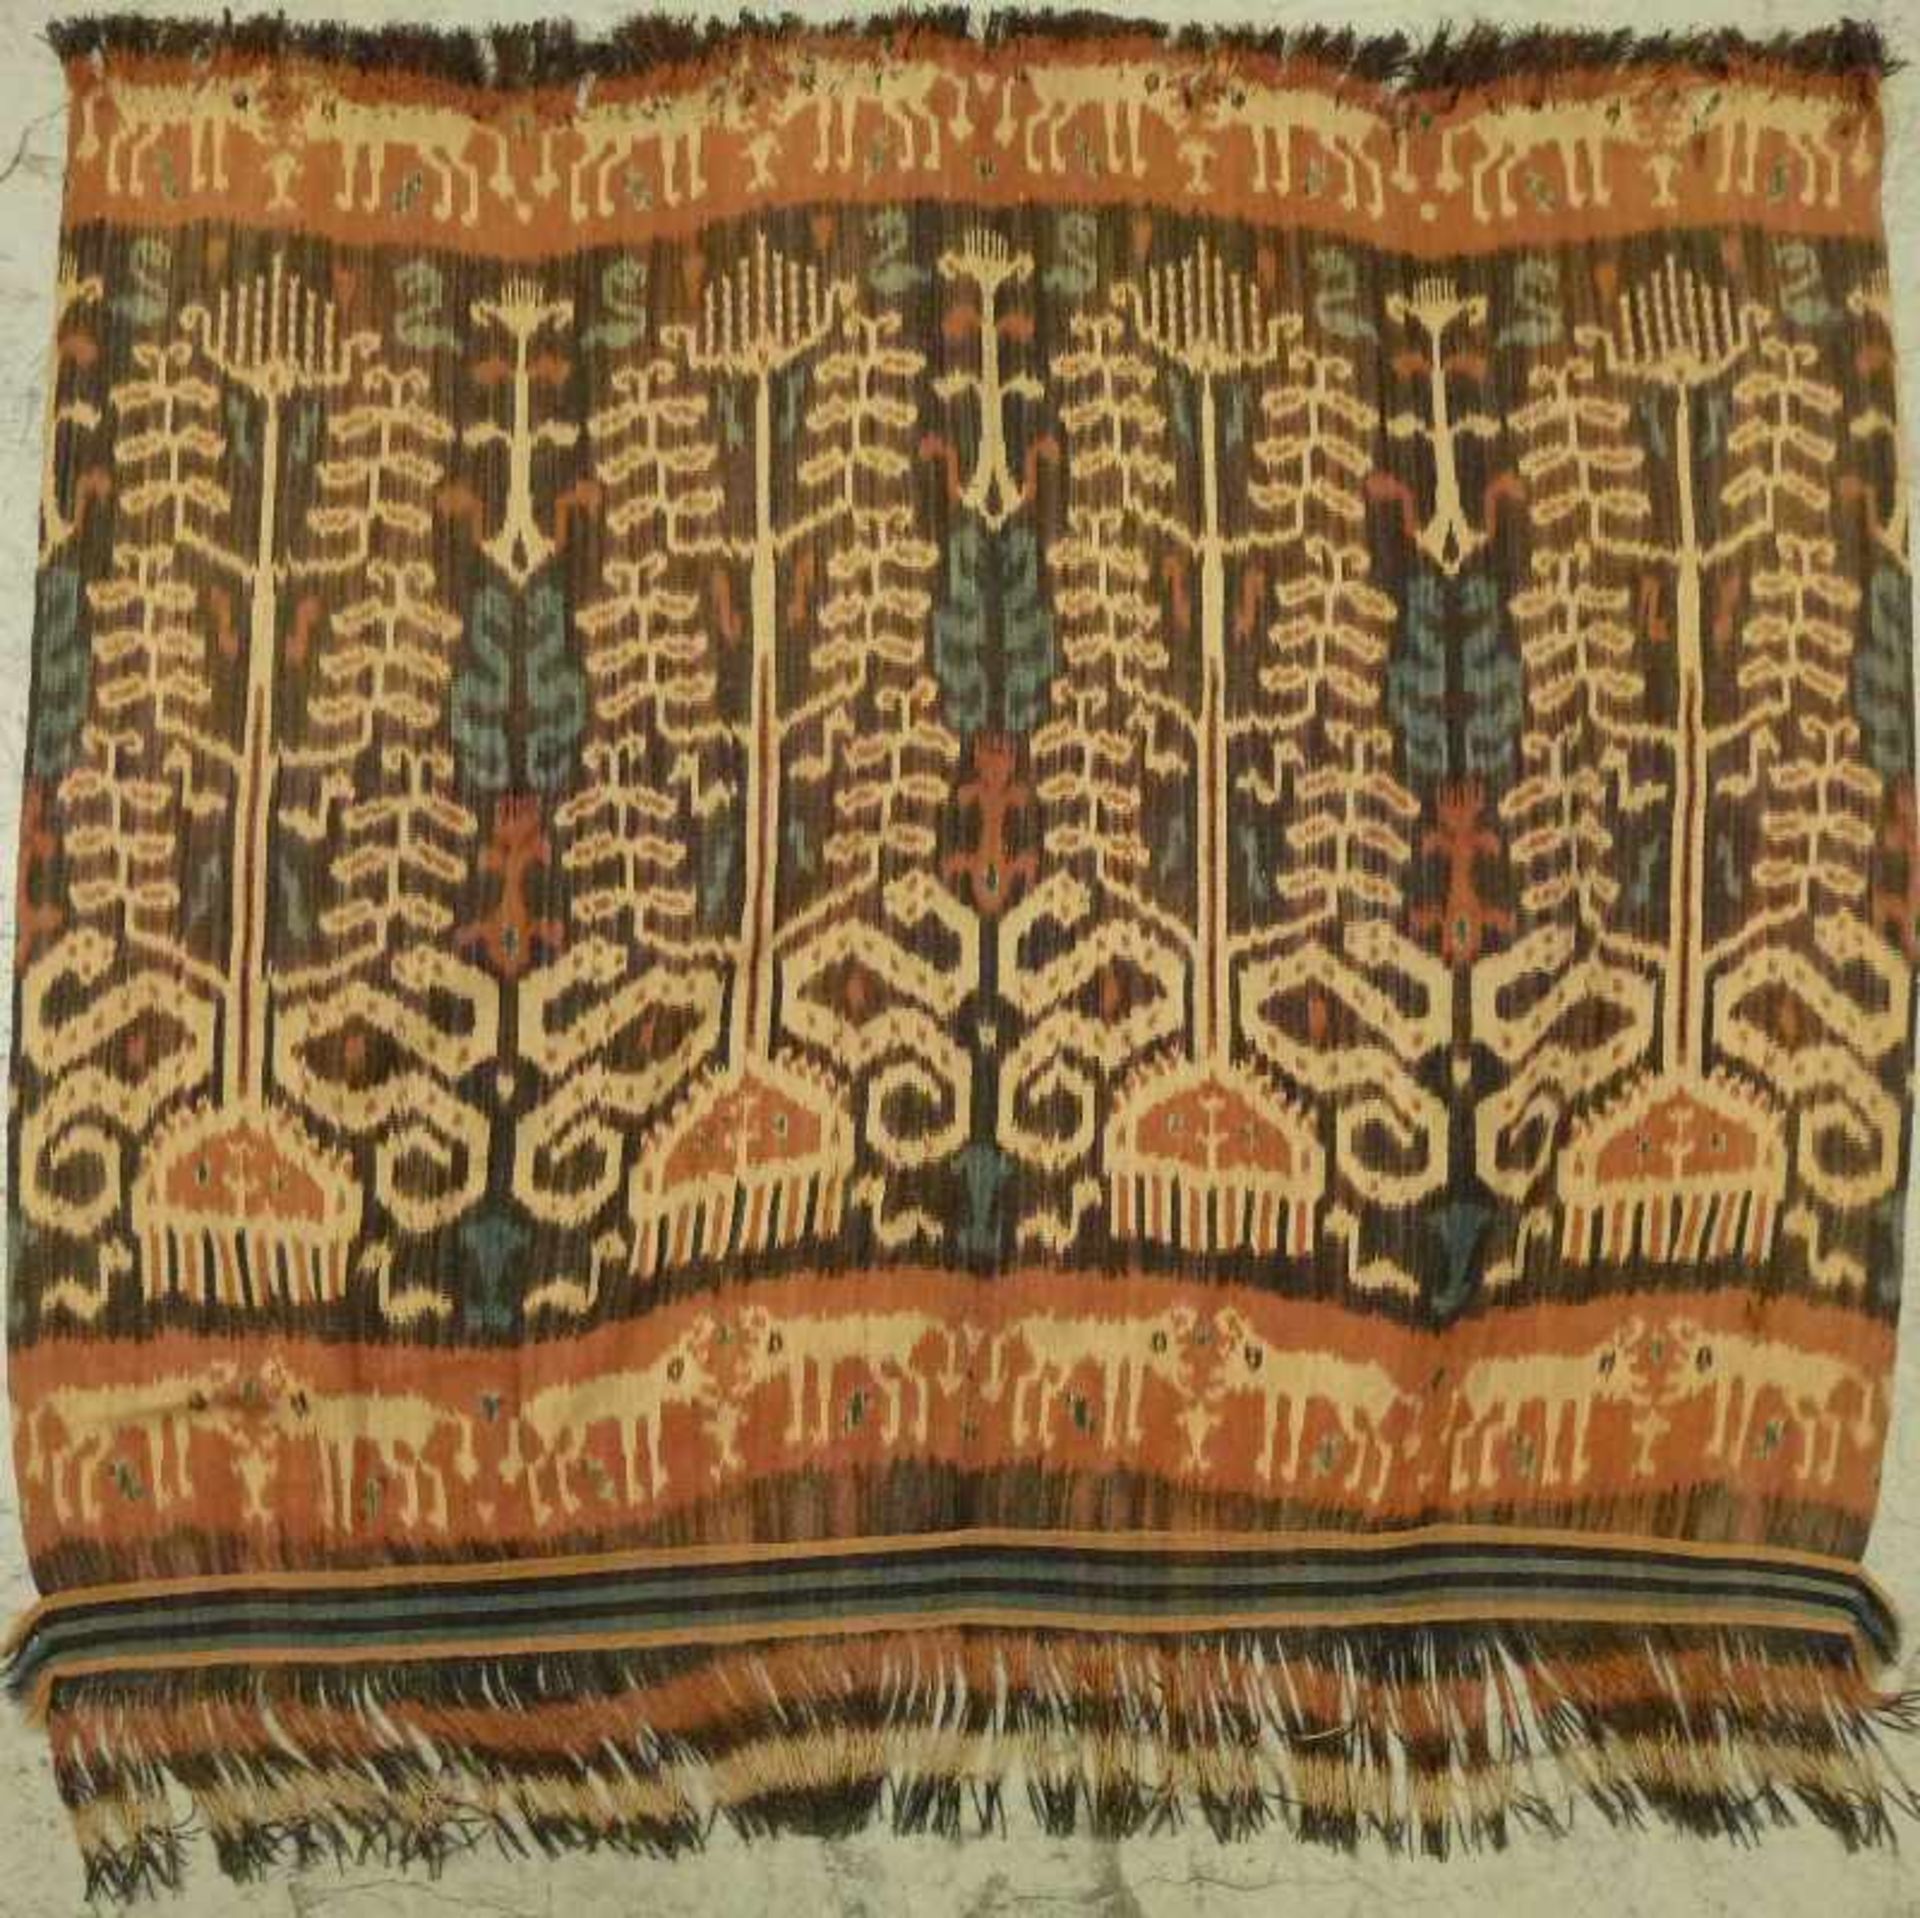 indonesisches Ikat gewebtes Tuch in Erdtönen, Tiere, Bäume u. Ornamente, gekürzt, 108x117 cm